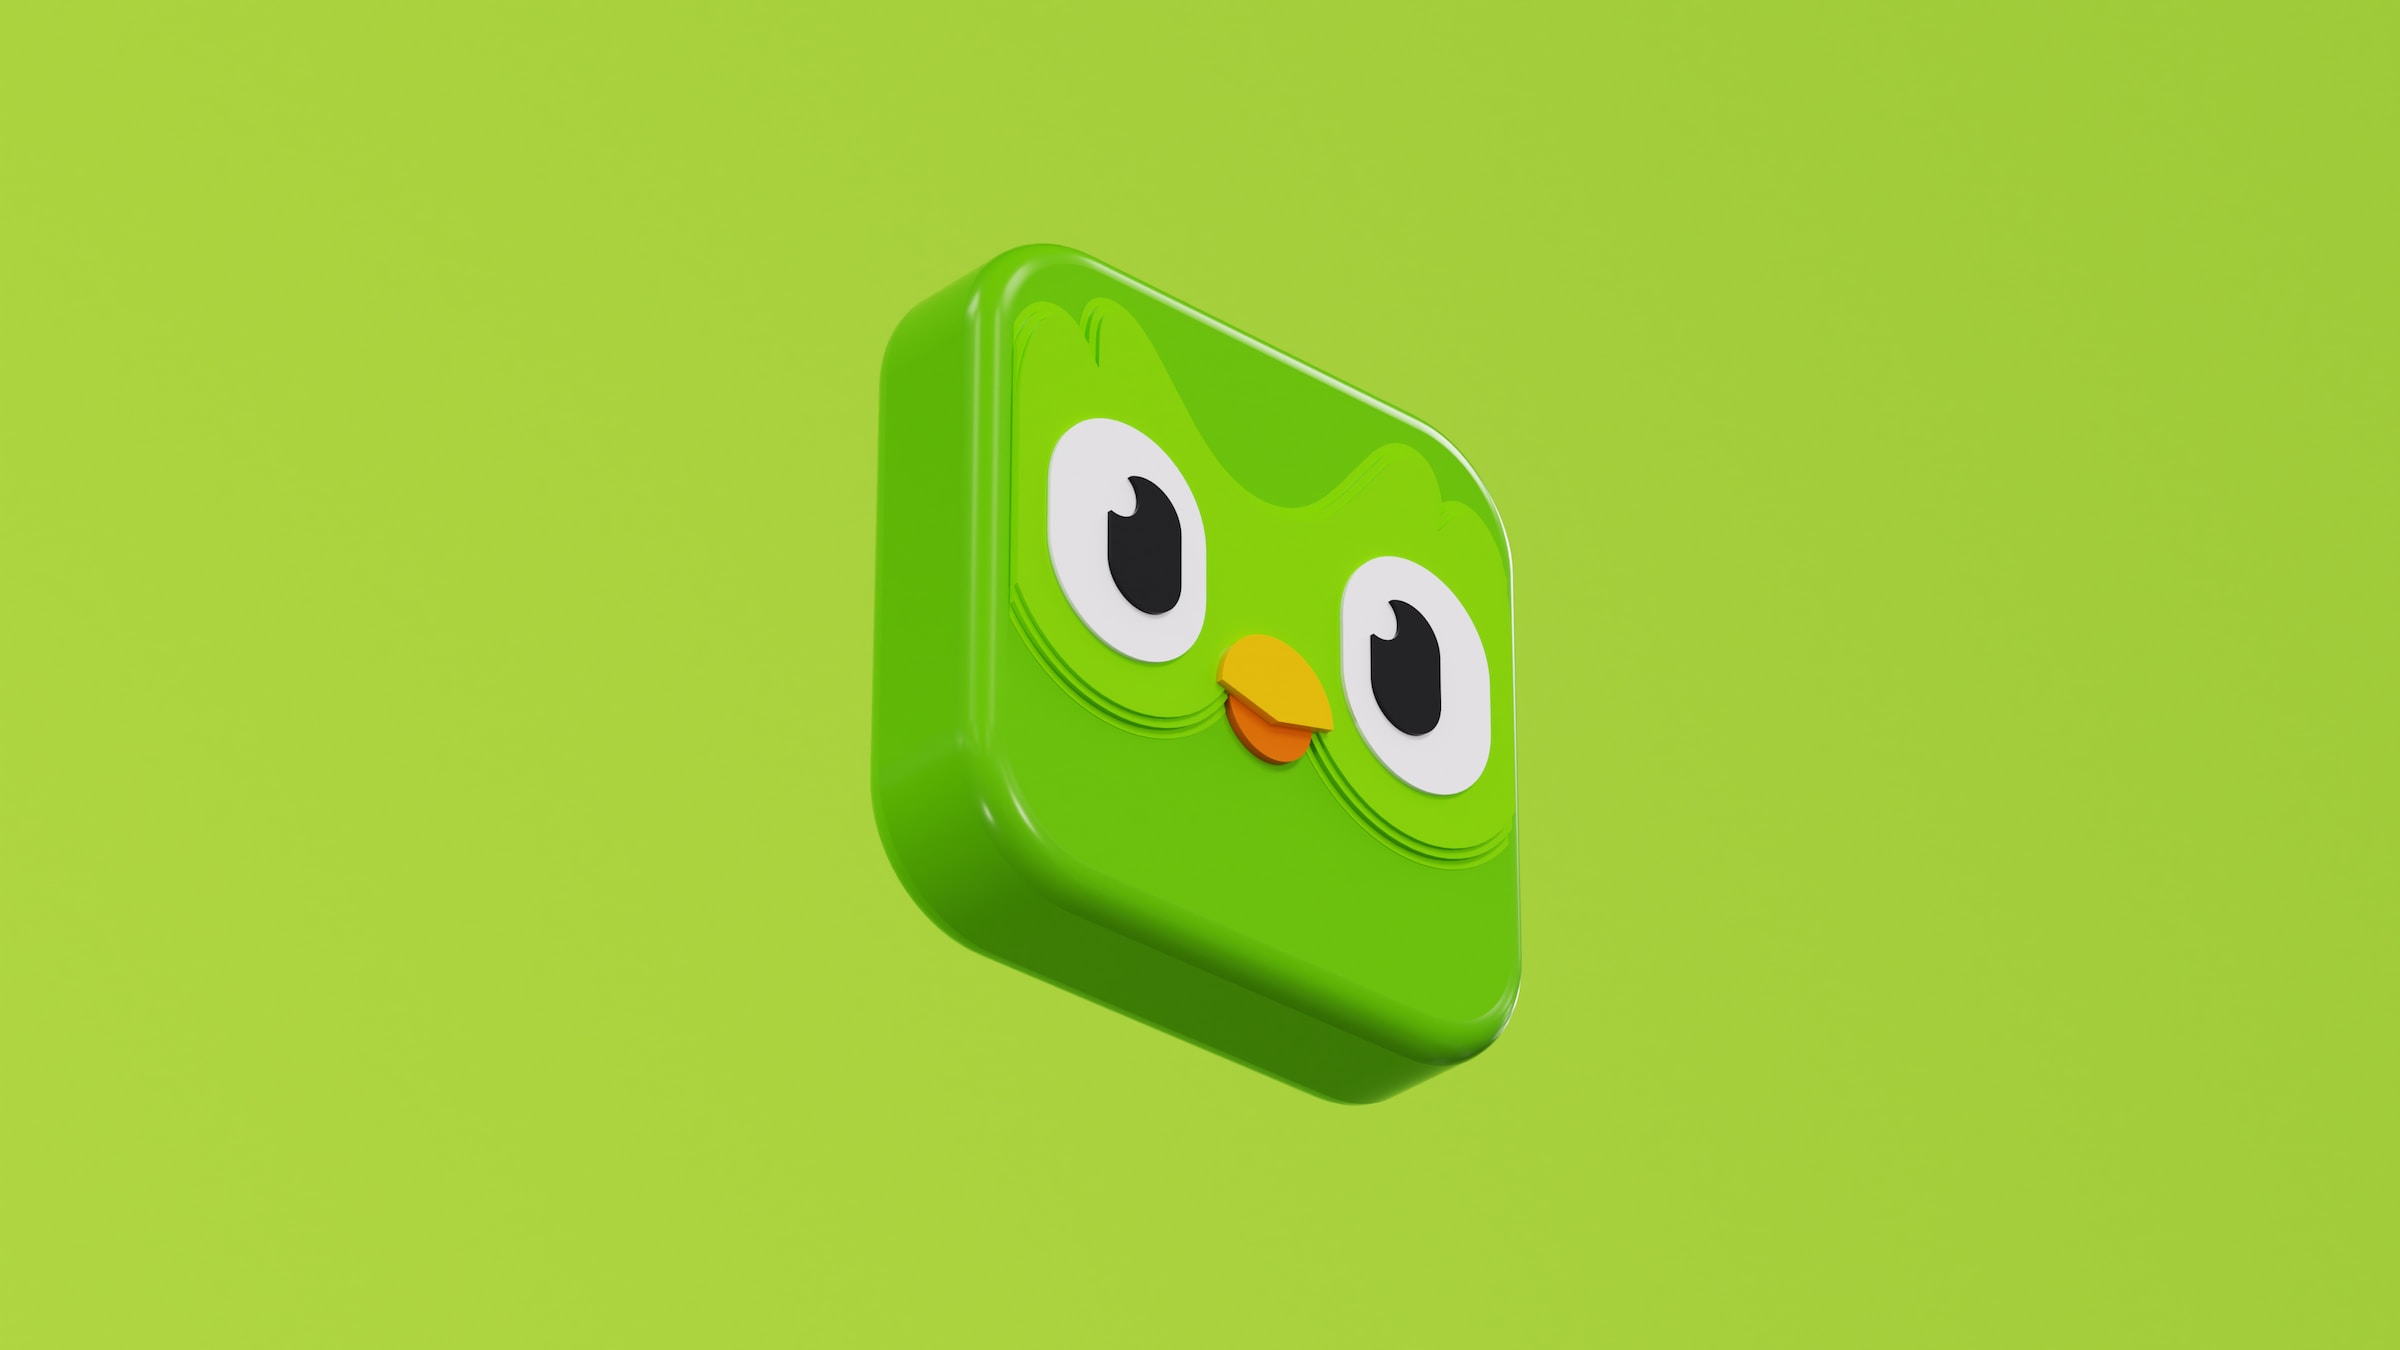 Masz tę aplikację do nauki języków? Wyciekły dane 2,6 mln użytkowników Duolingo